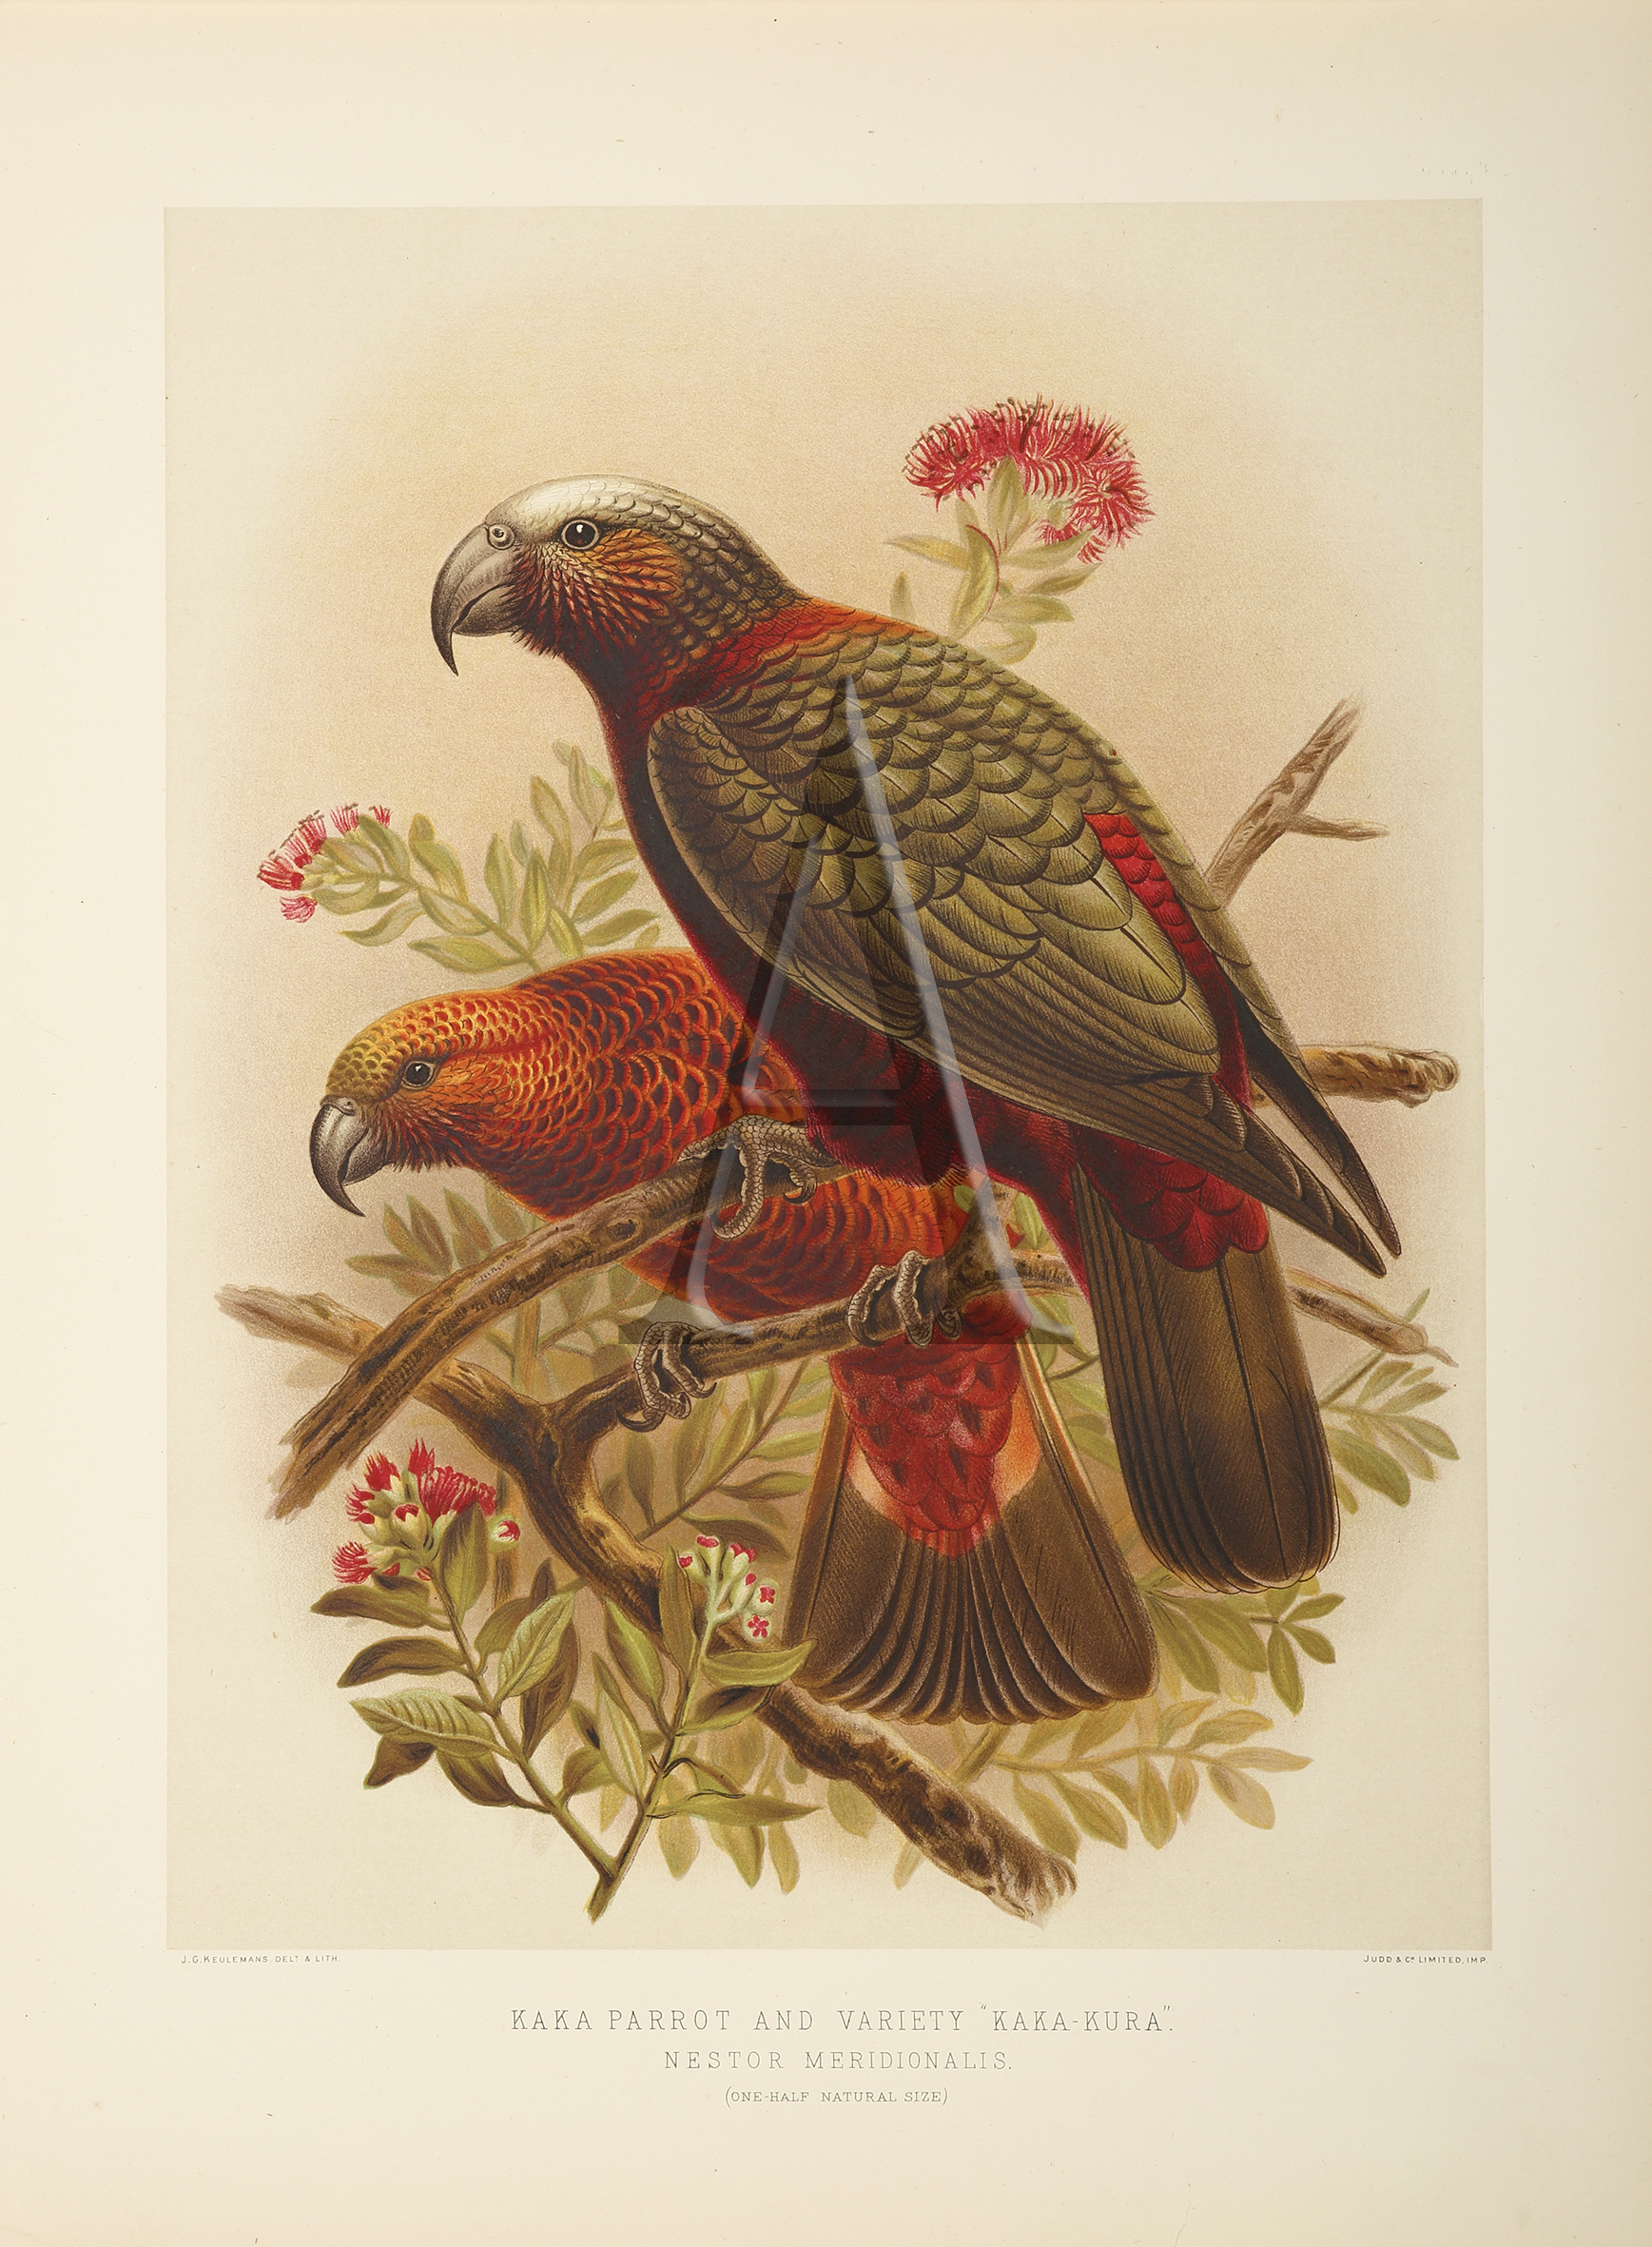 Kaka Parrot and variety Kaka-Kura - Antique Print from 1888